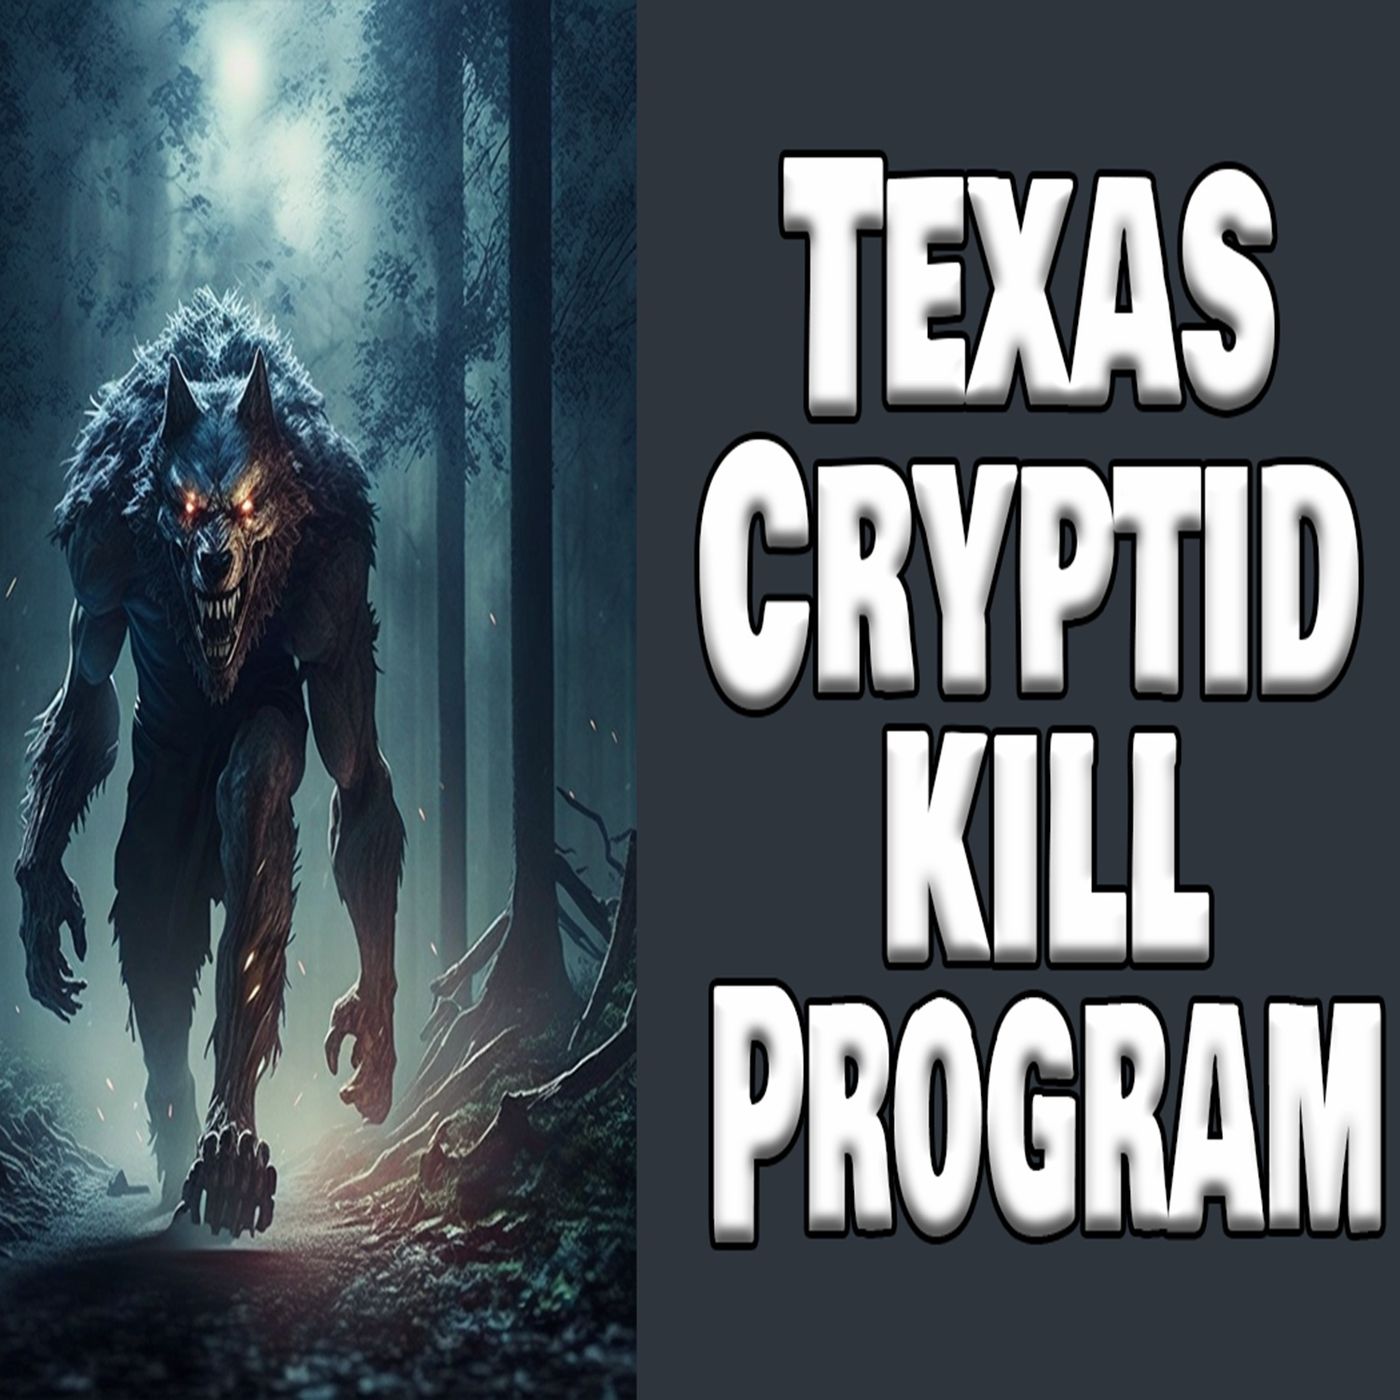 Texas Bigfoot Kill Program